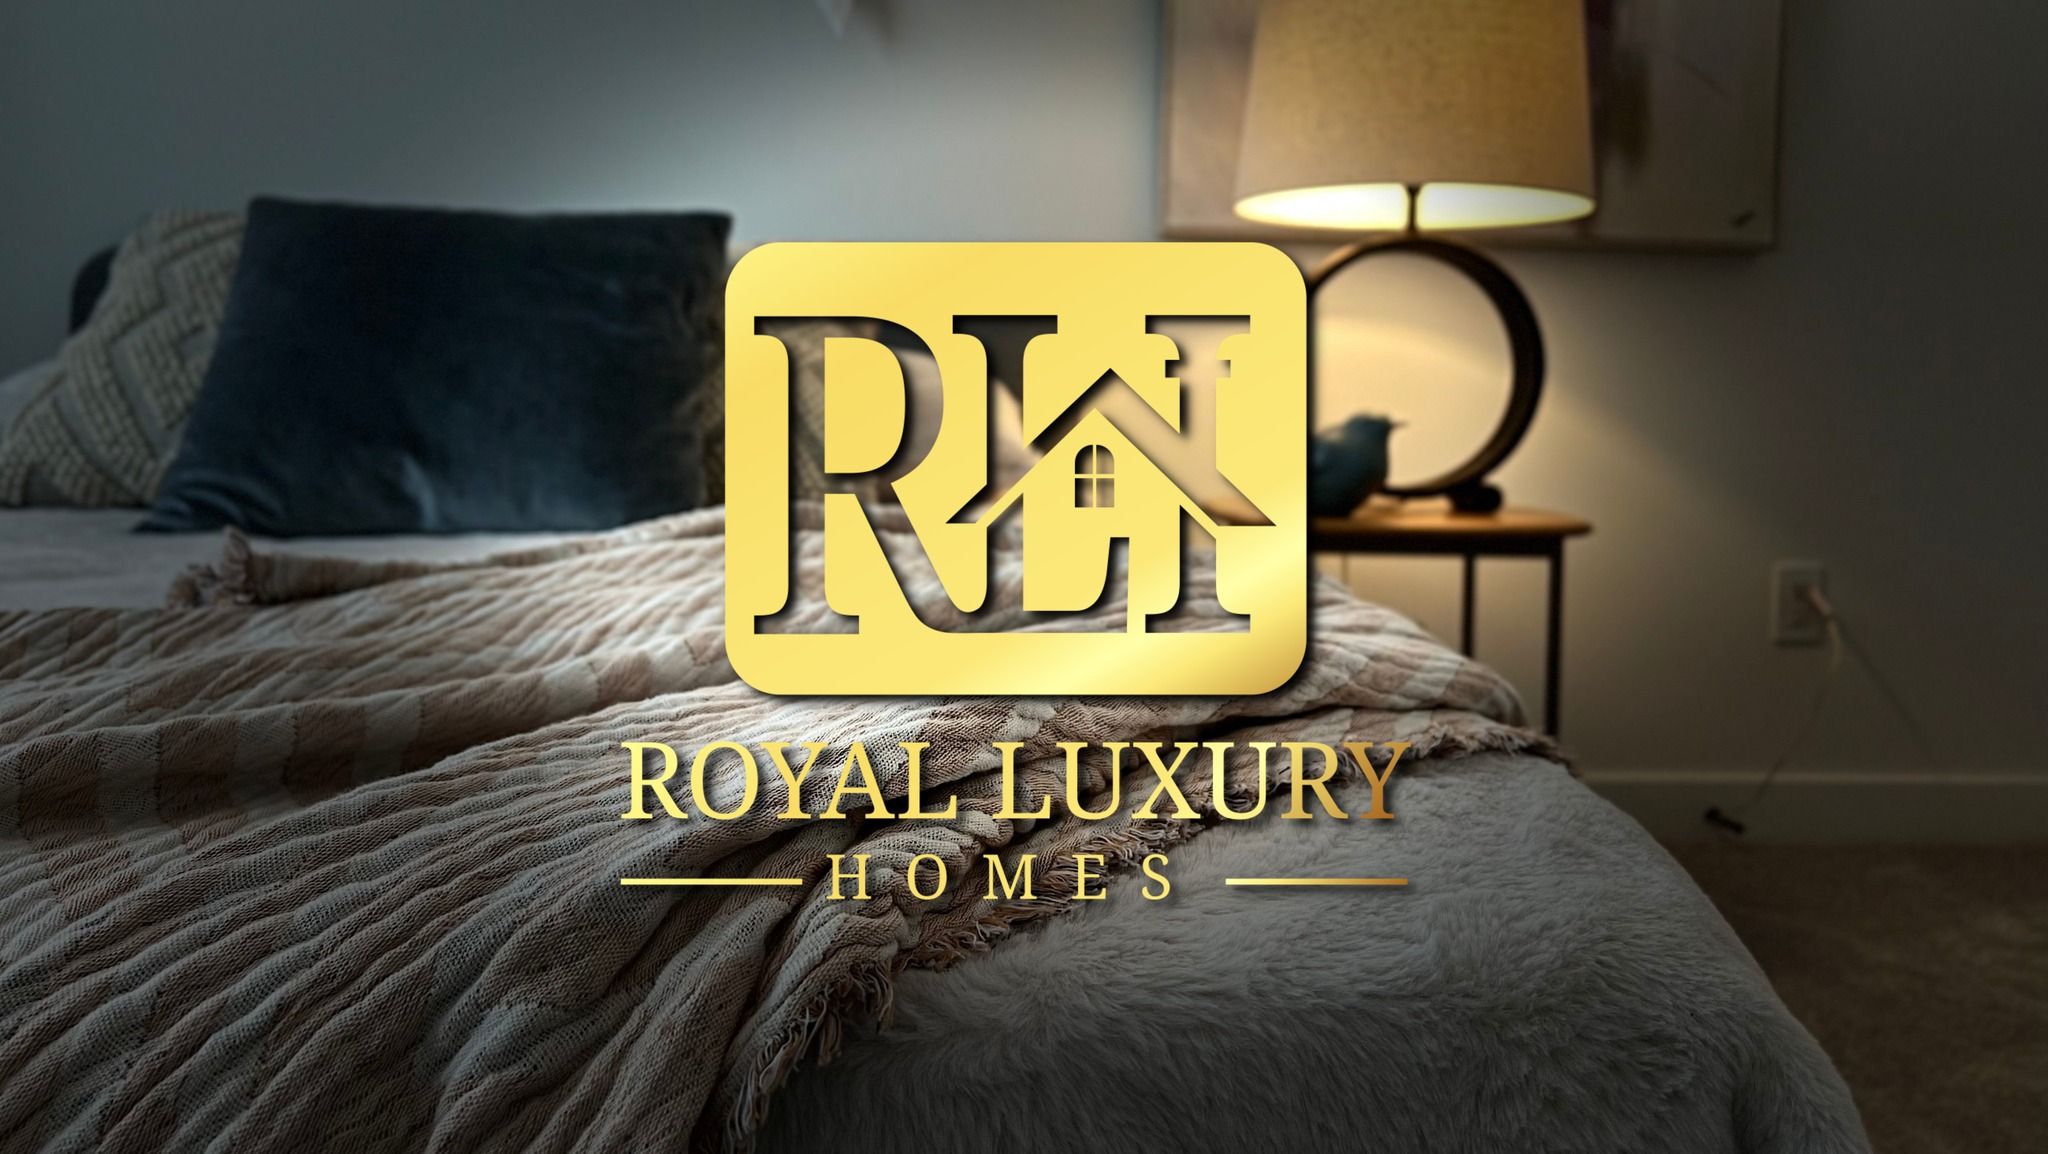 Royal Luxury Homes